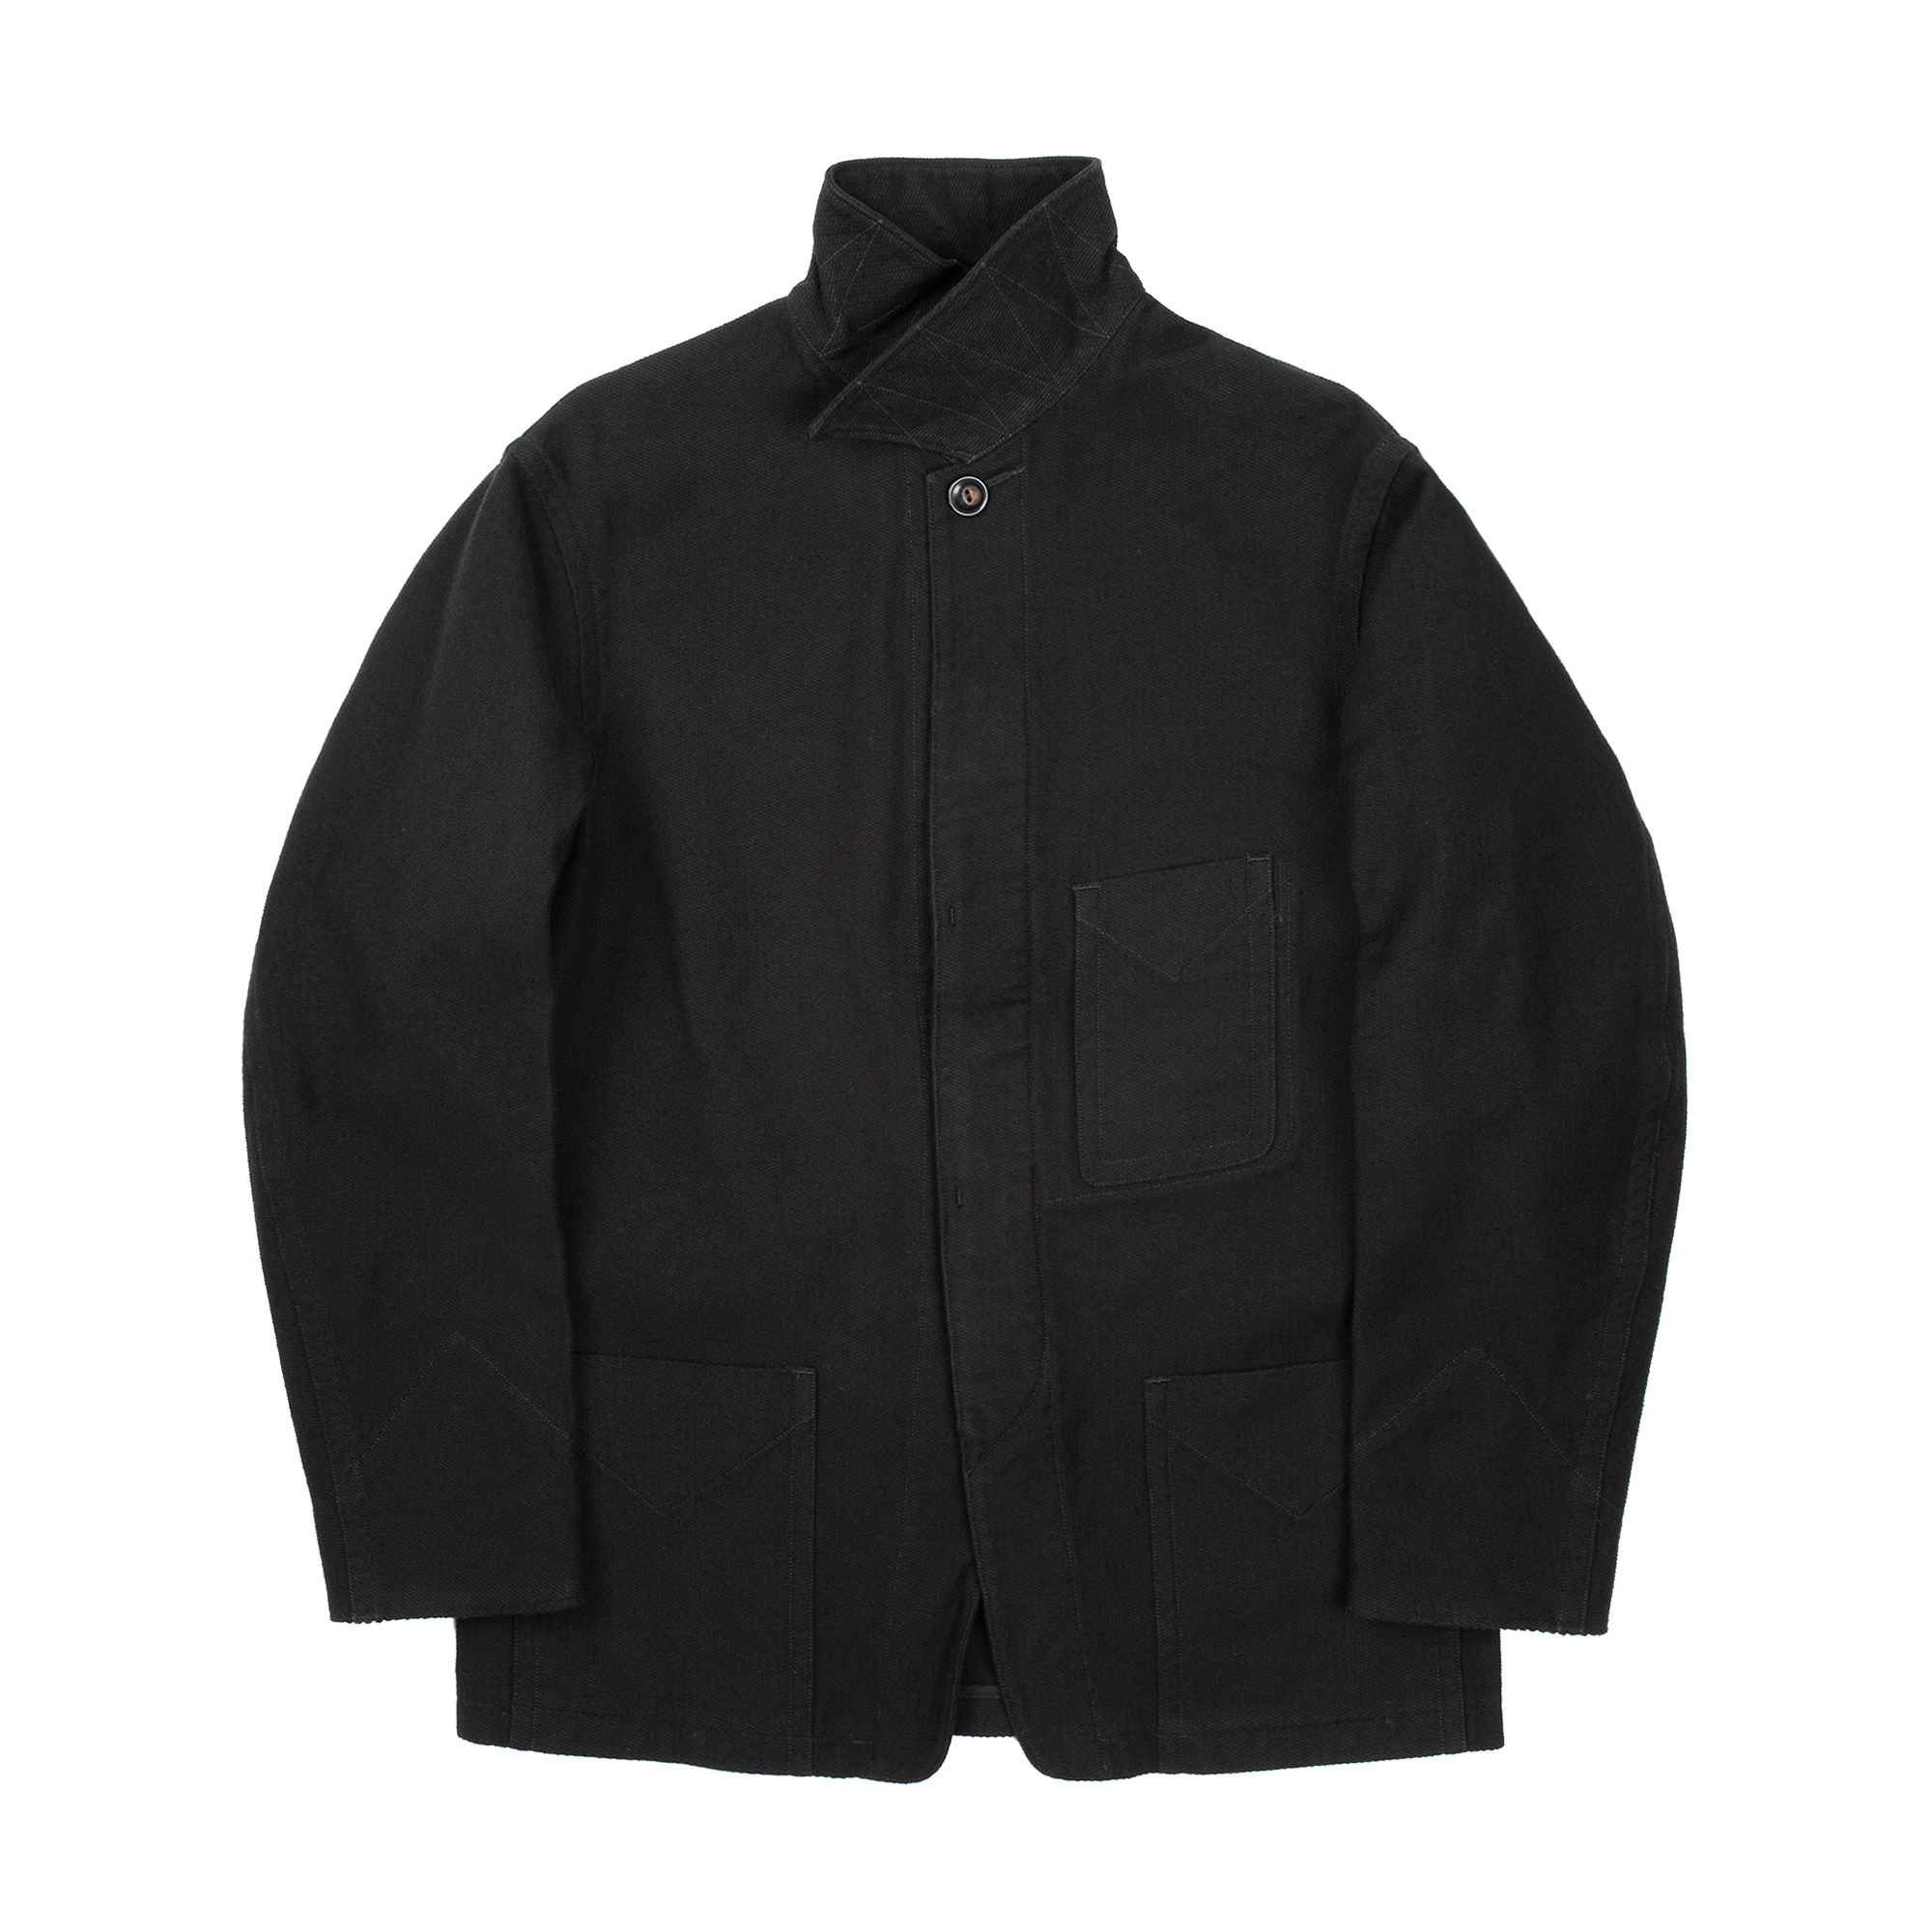 MotivMfg - Apothek Jacket (Black)